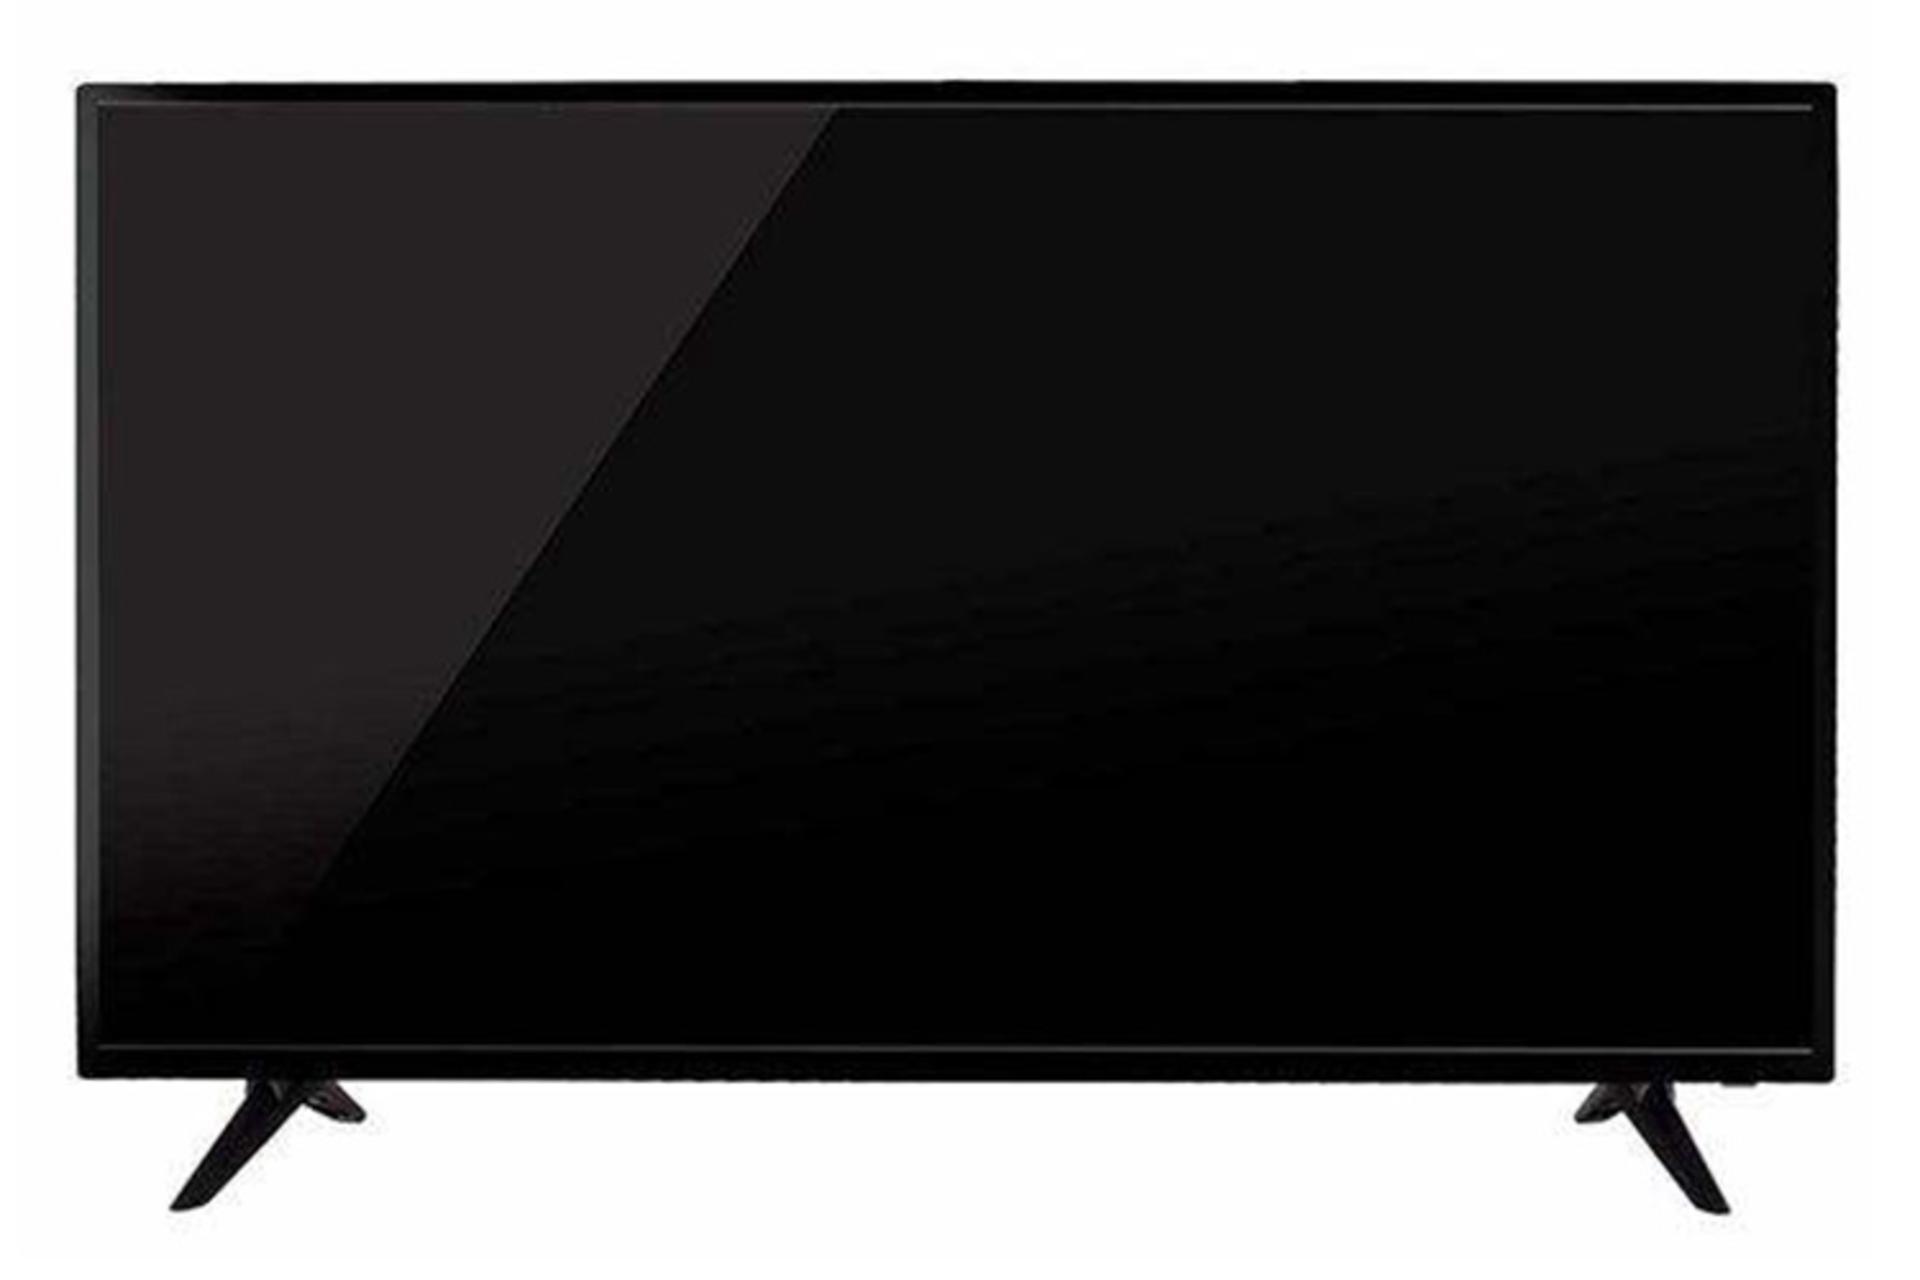 نمای جلو تلویزیون دنای K-43D1 مدل 43 اینچ با صفحه خاموش